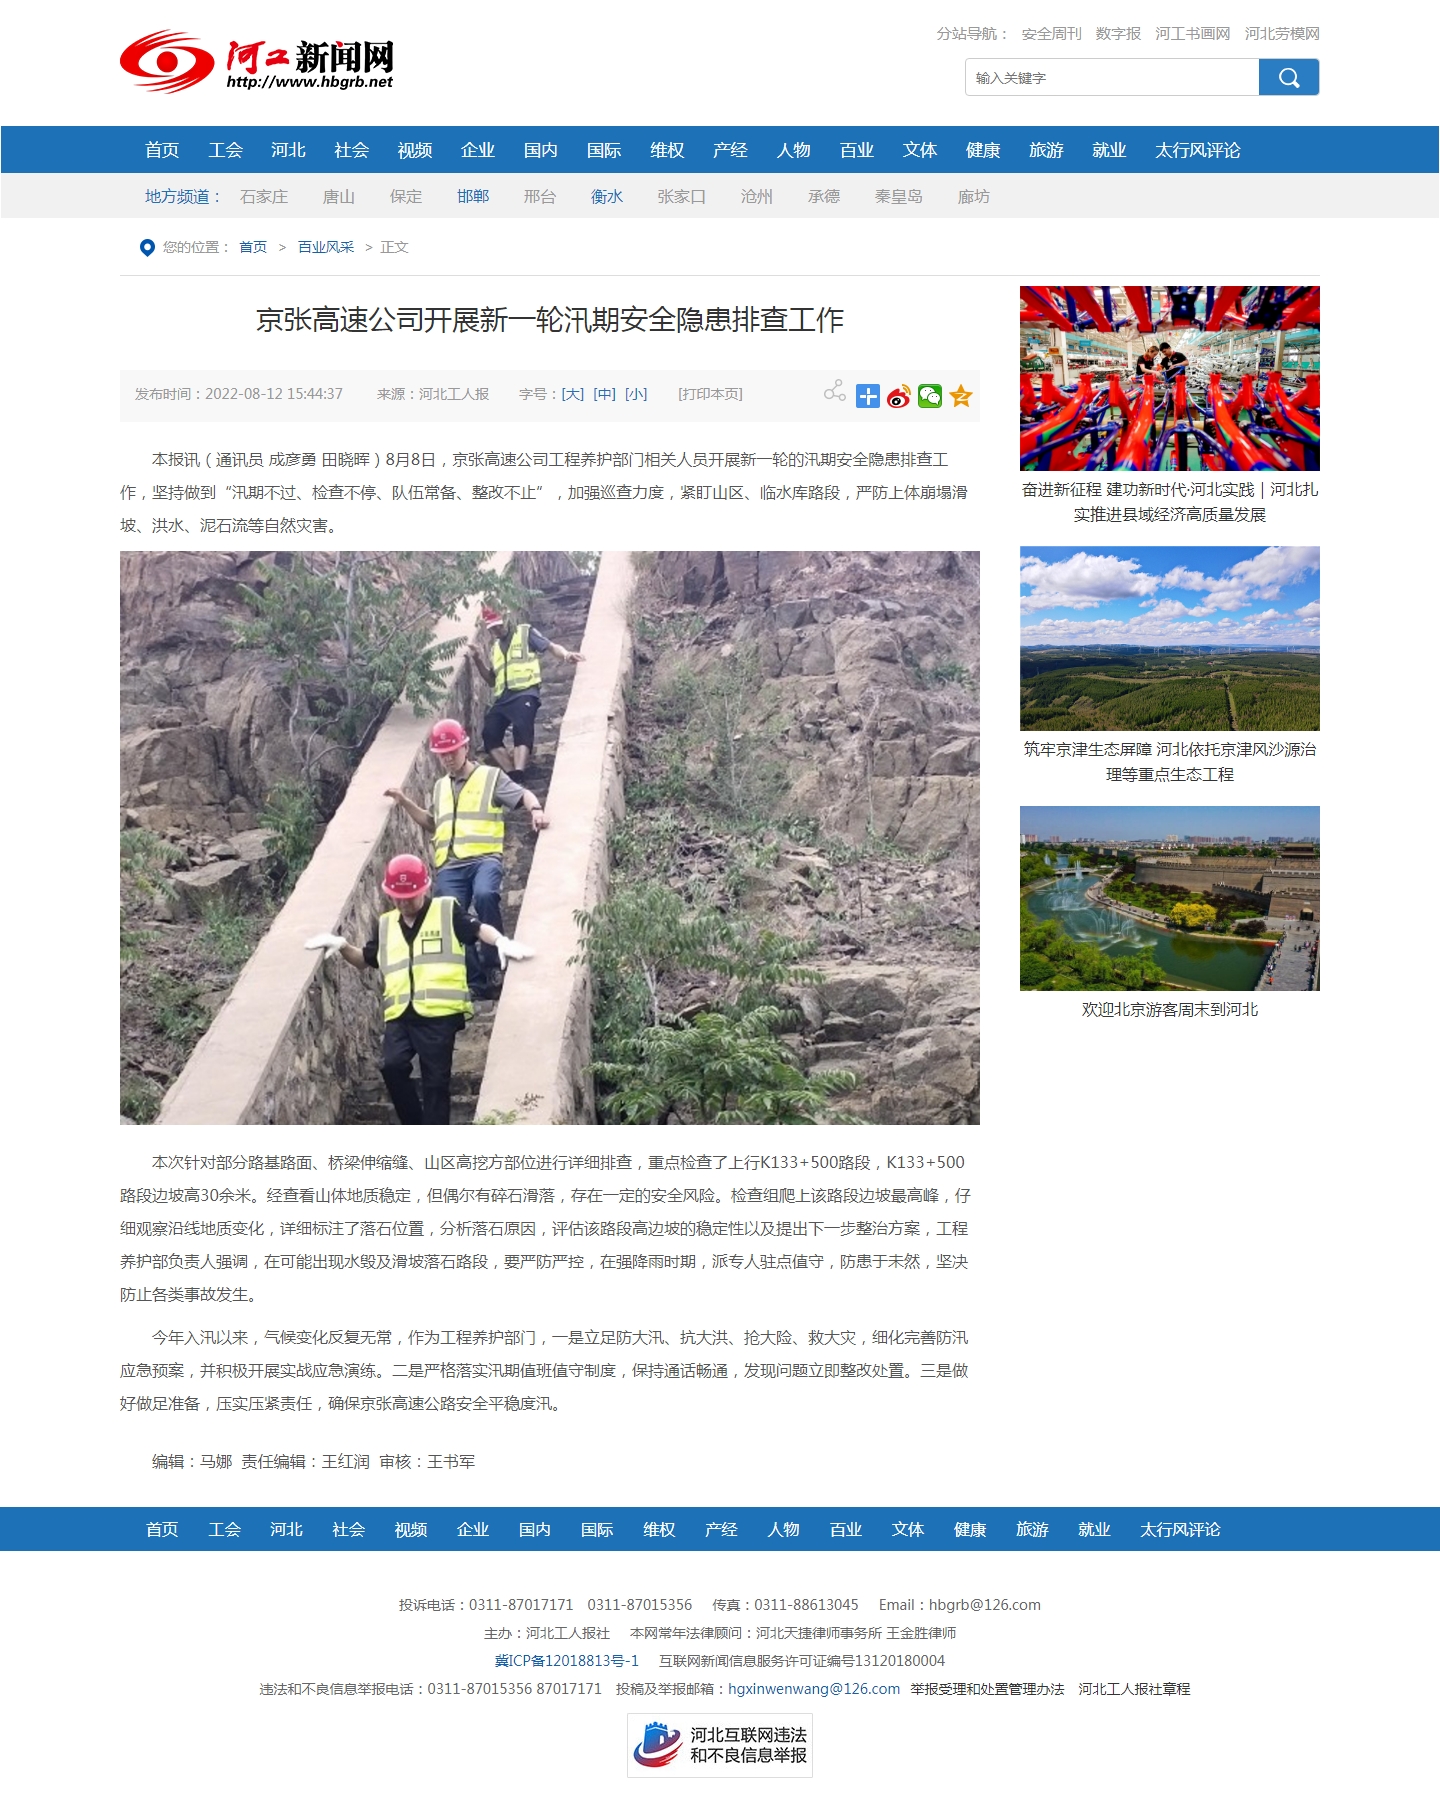 京张高速公司开展新一轮汛期安全隐患排查工作-河工新闻网.jpg